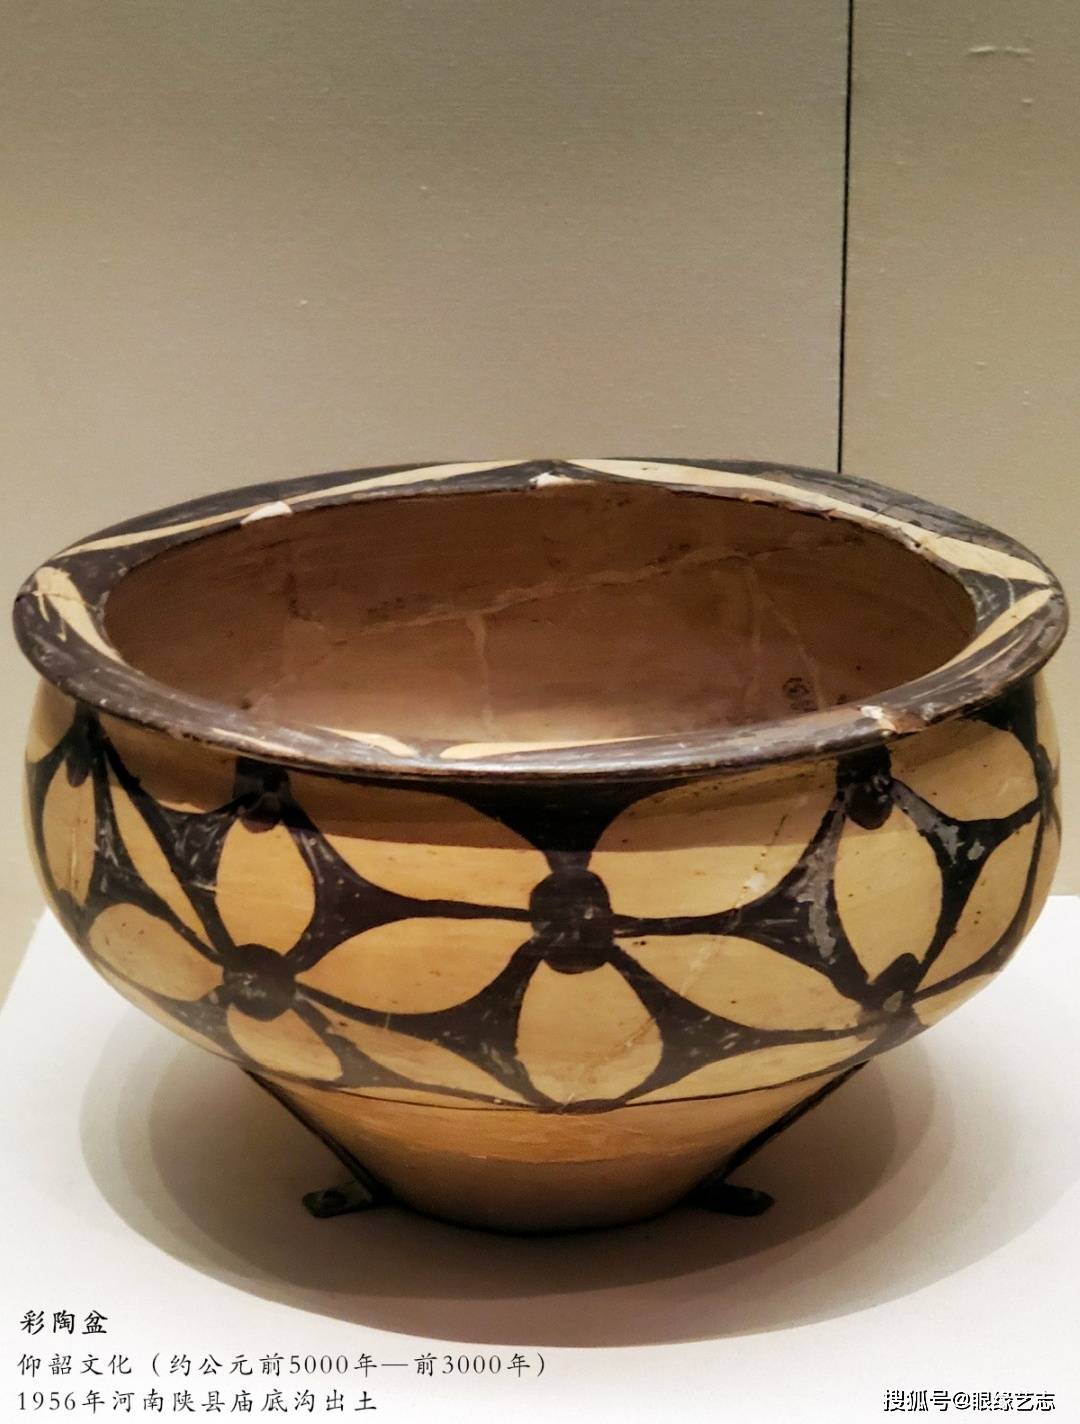 河姆渡文化遗址所出土的陶器是在我国发现的最早的彩陶文化,我们所